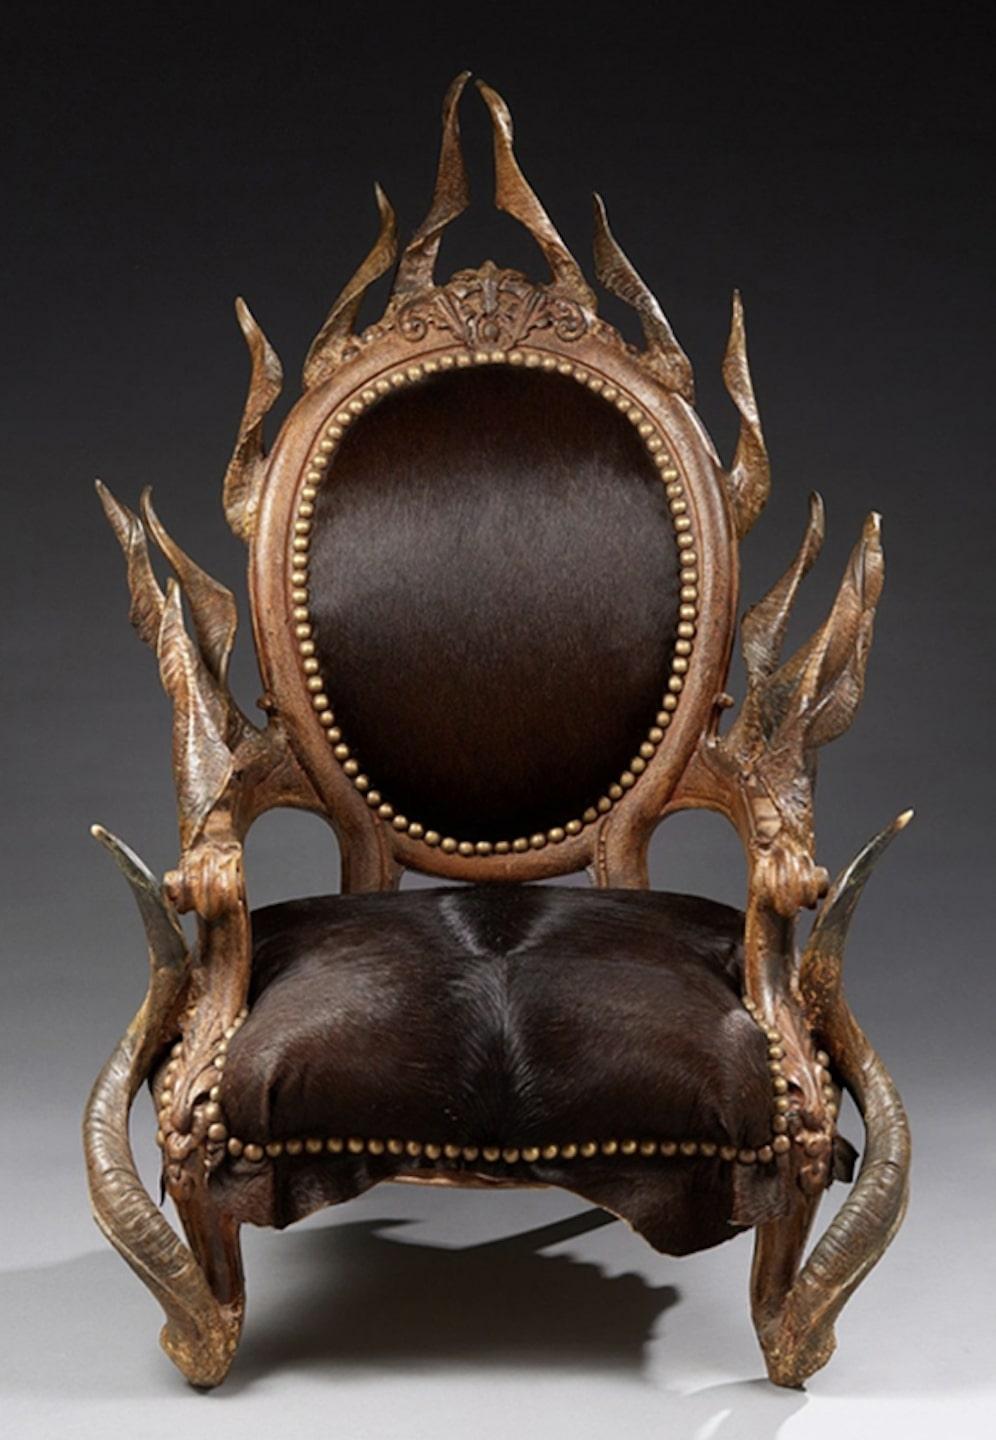 Throne-sculpture 